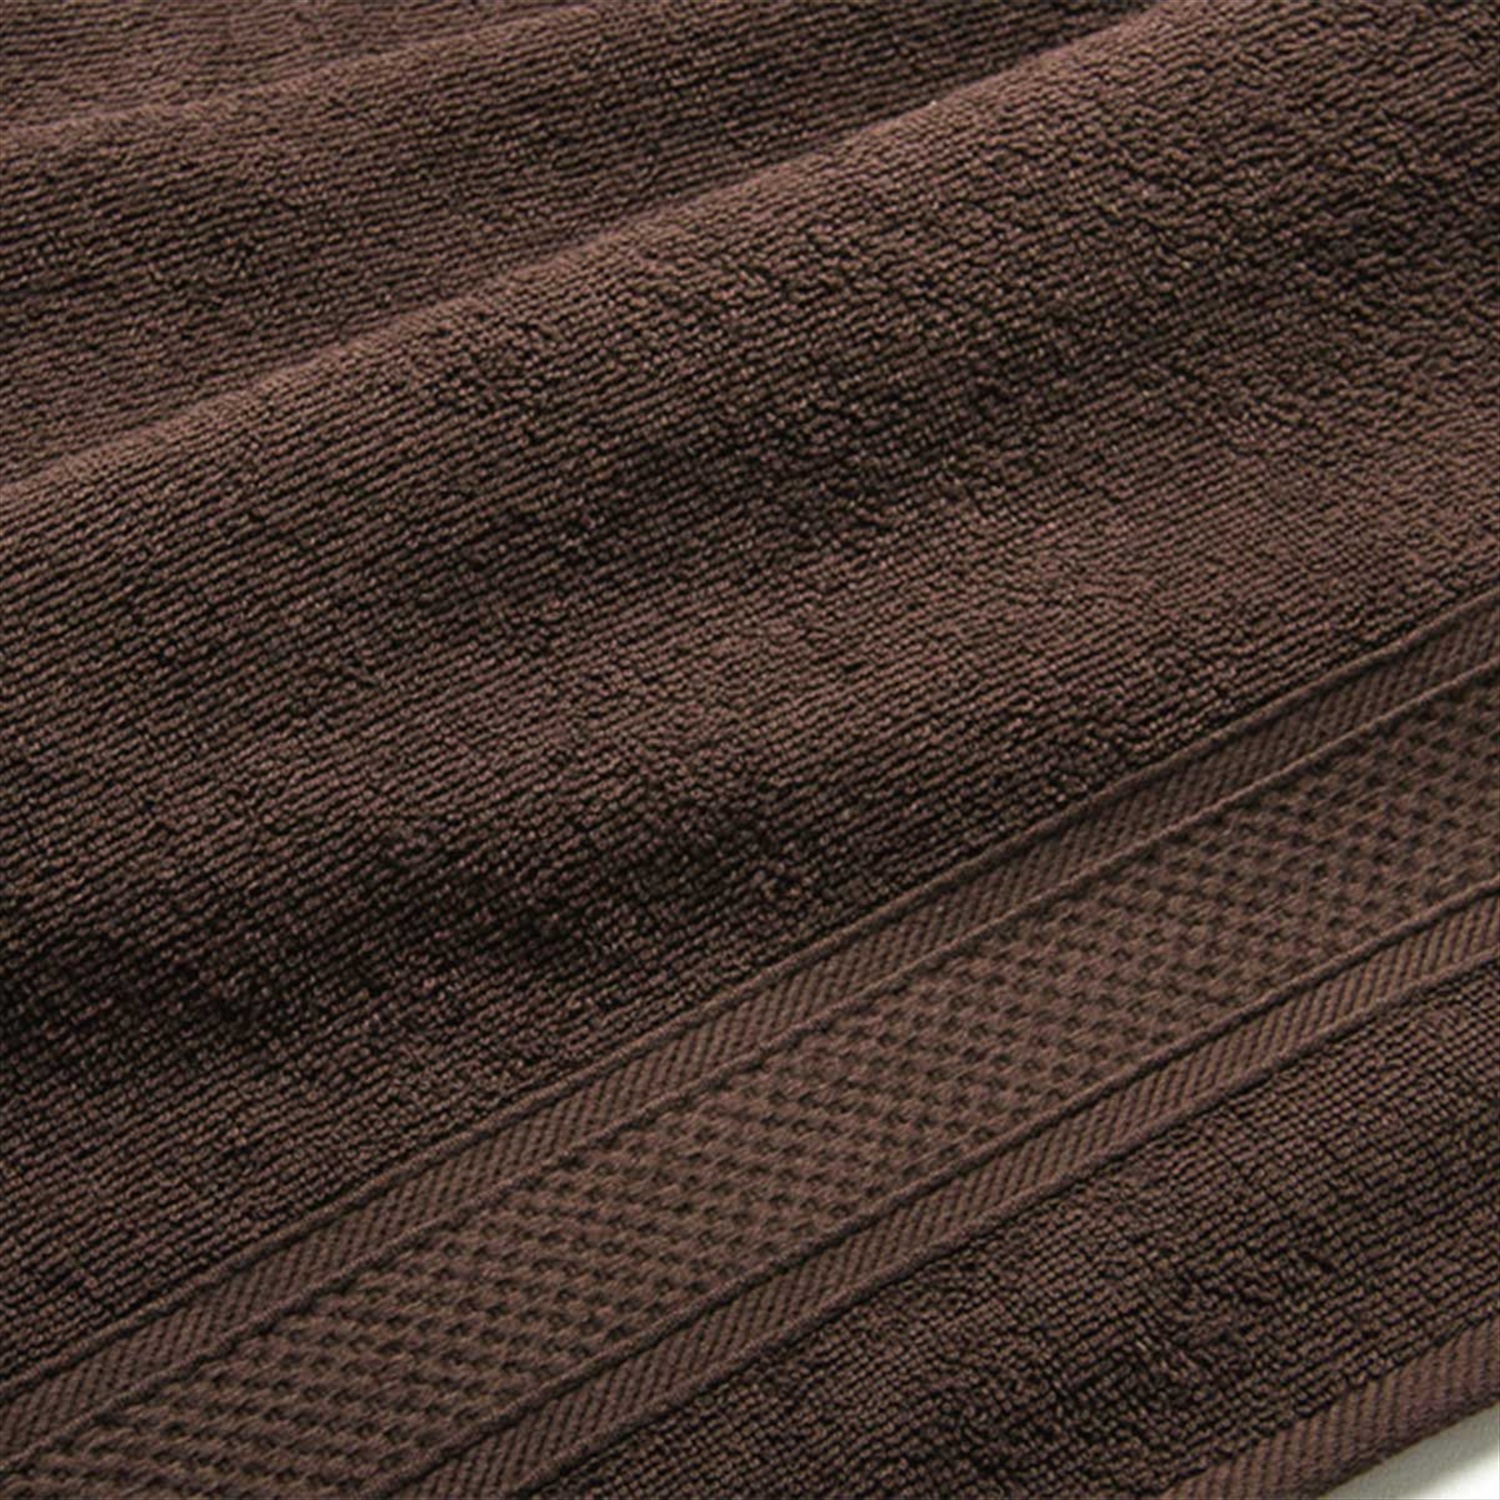 Коричневое полотенце. Полотенце коричневое 100х180. Махра коричневая. Полотенце коричневый, Braun 370a.